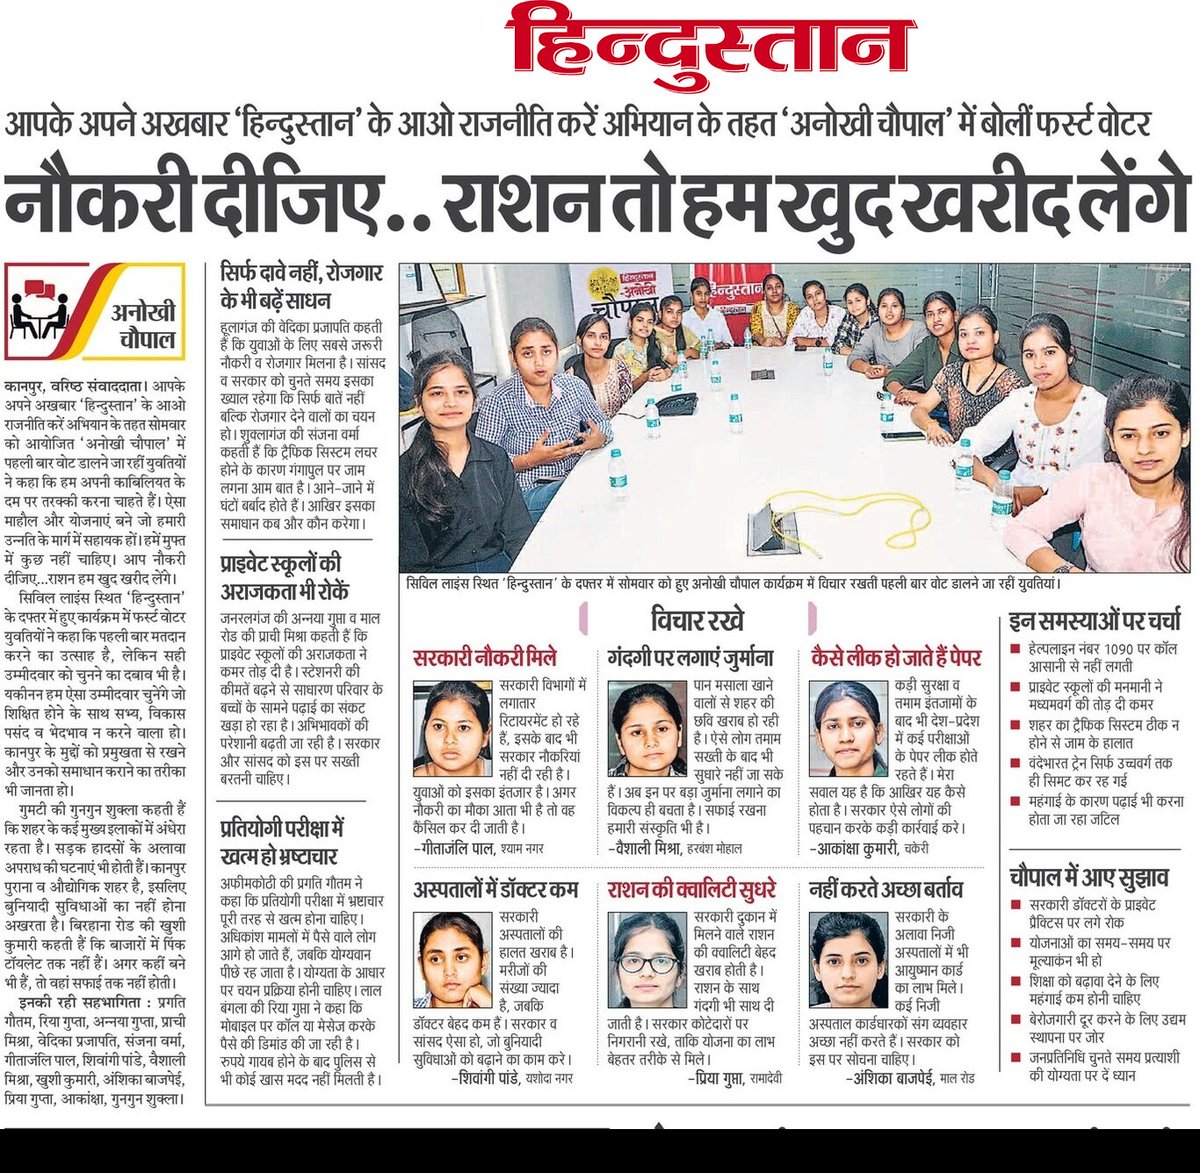 चुनाव में कानपुर के युवाओं के मन की बात, रोजगार कितना बड़ा मुद्दा है, इसका अंदाजा लगाया जा सकता है। #Elecciones2024 #Kanpur